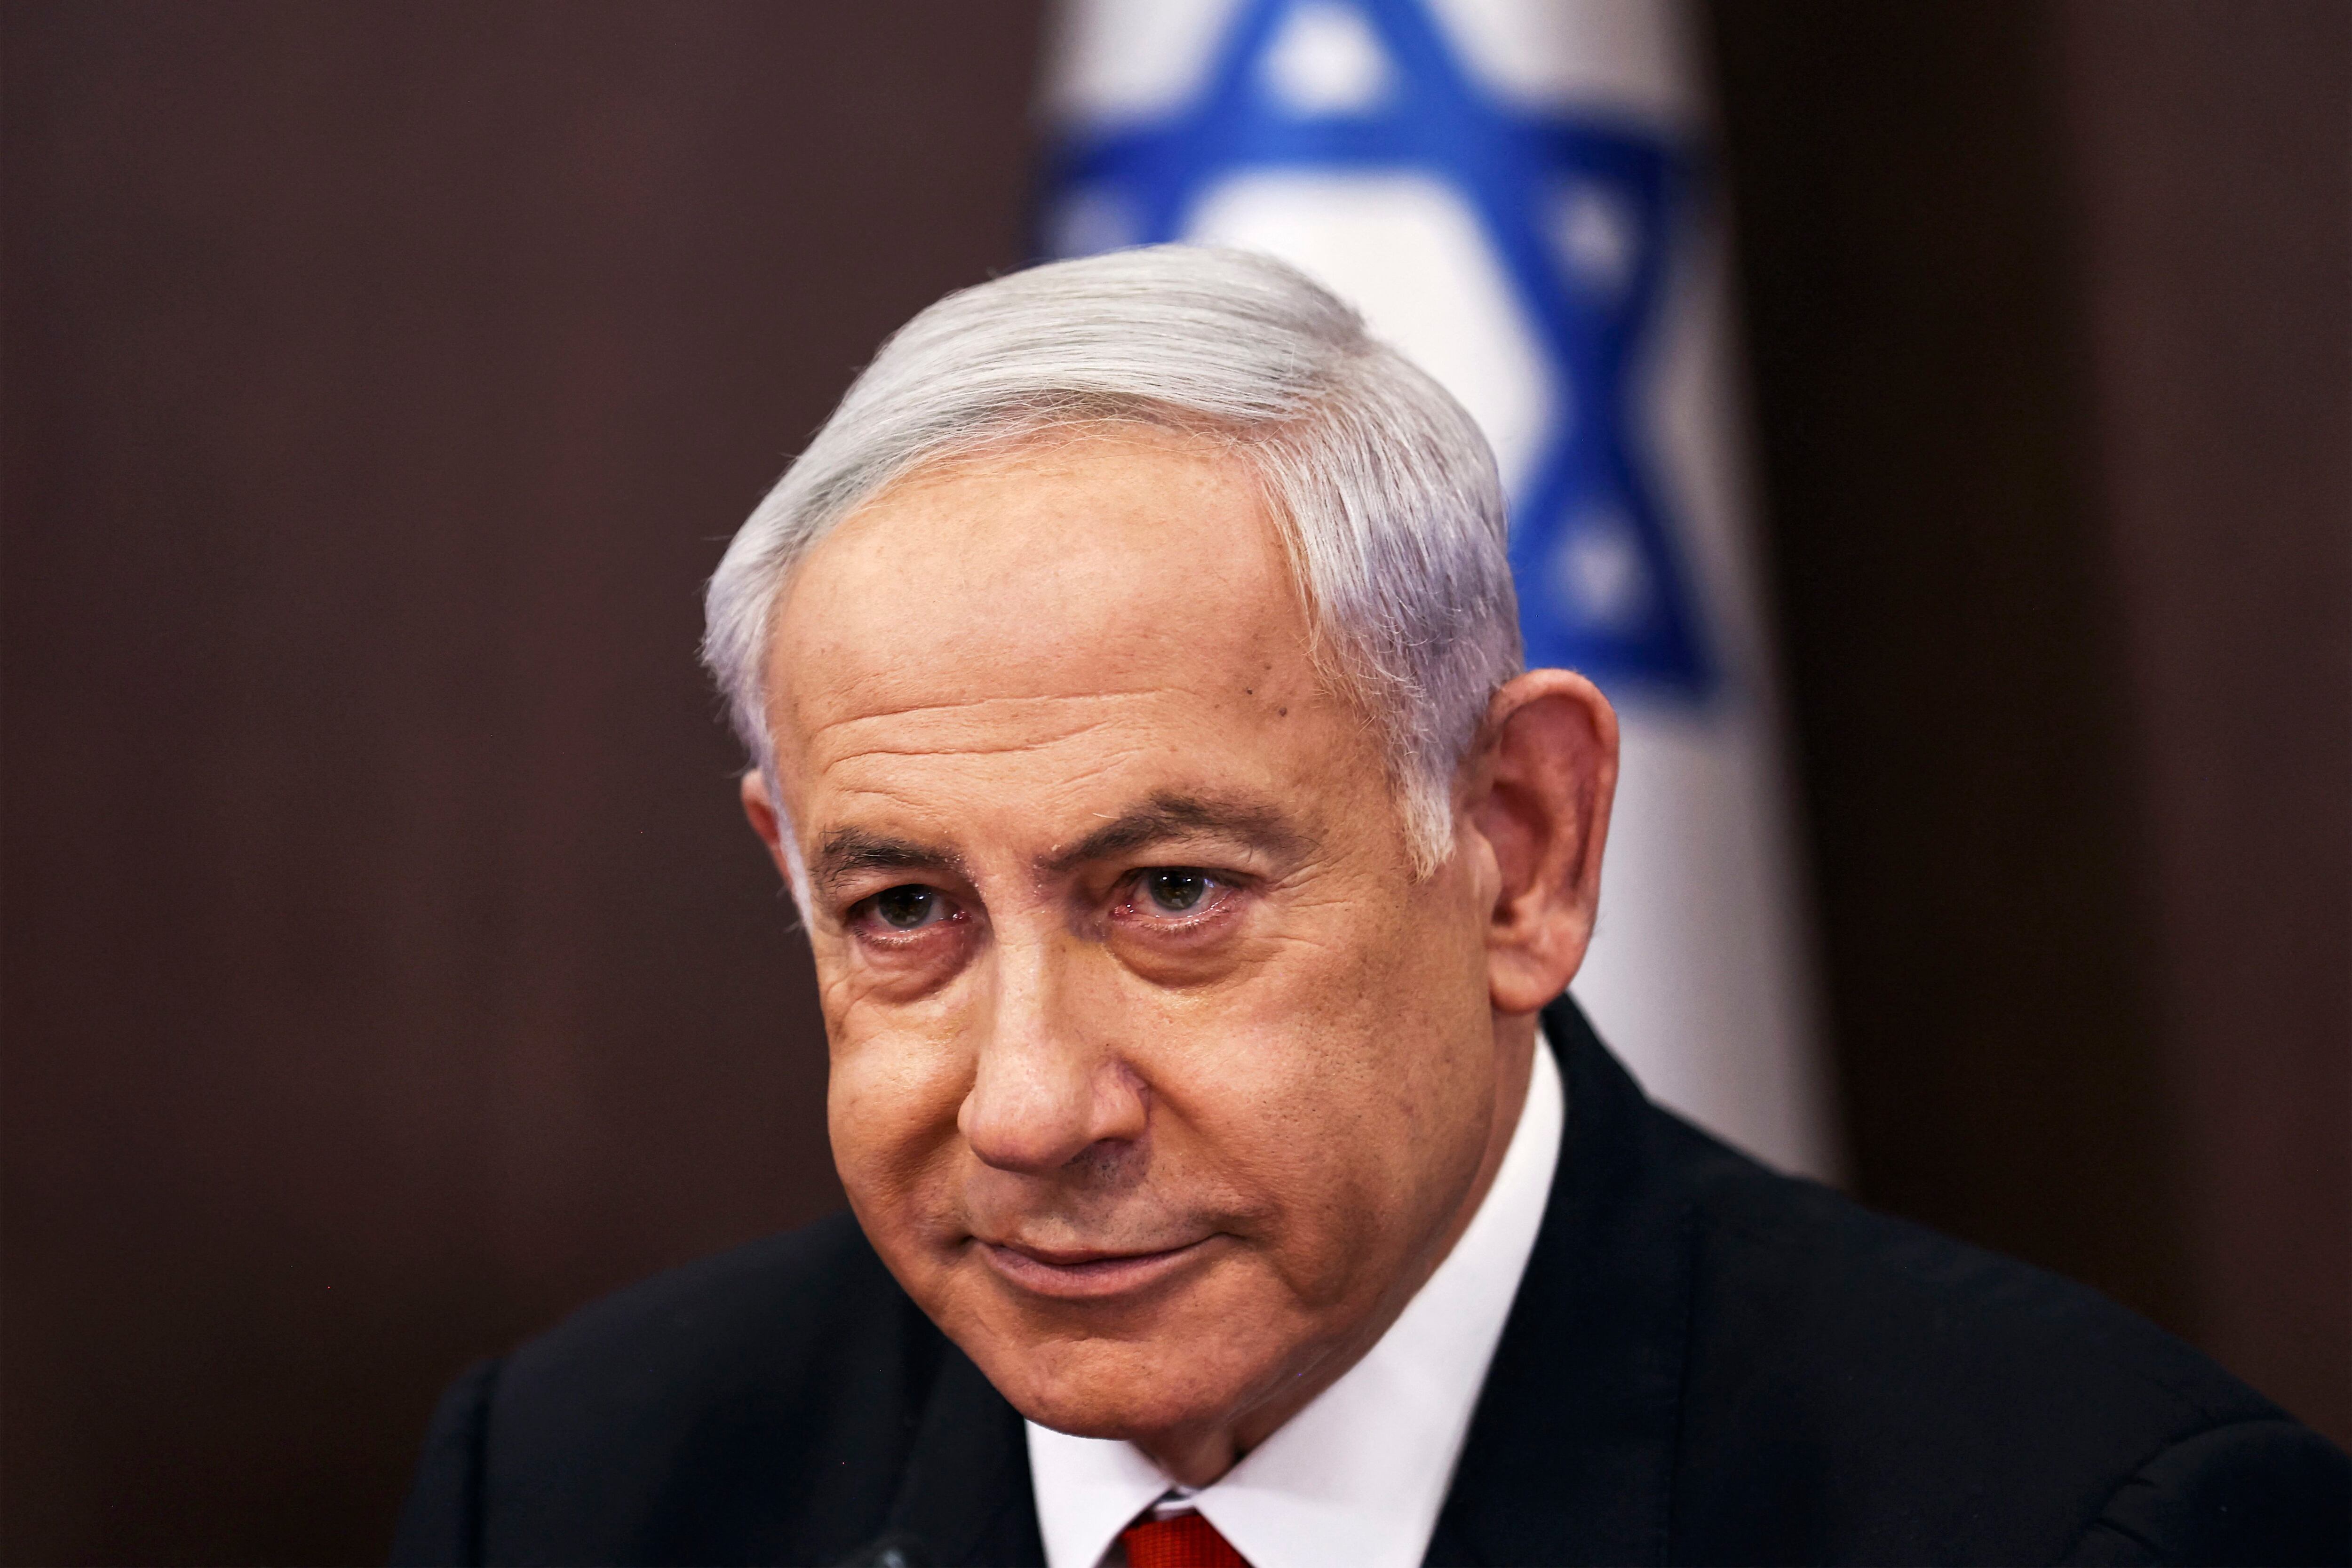 Benjamin Netanyahu promete ‘restaurar la seguridad’ en Israel tras estallido de violencia